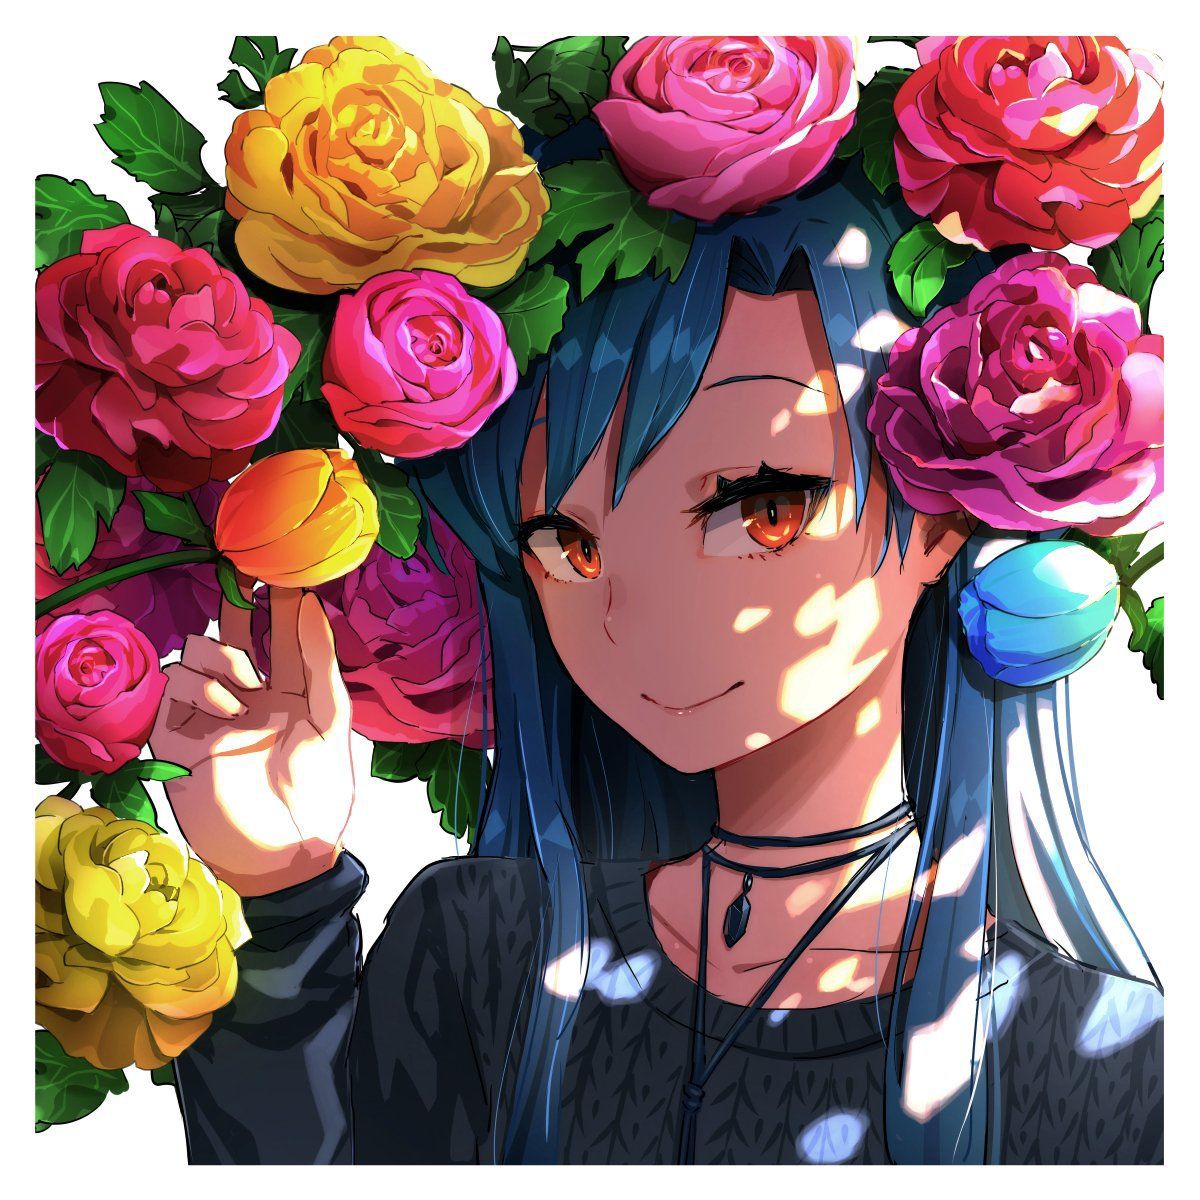 [2次] secondary images of pretty girls with flowers painted part 5 [non-hentai] 1